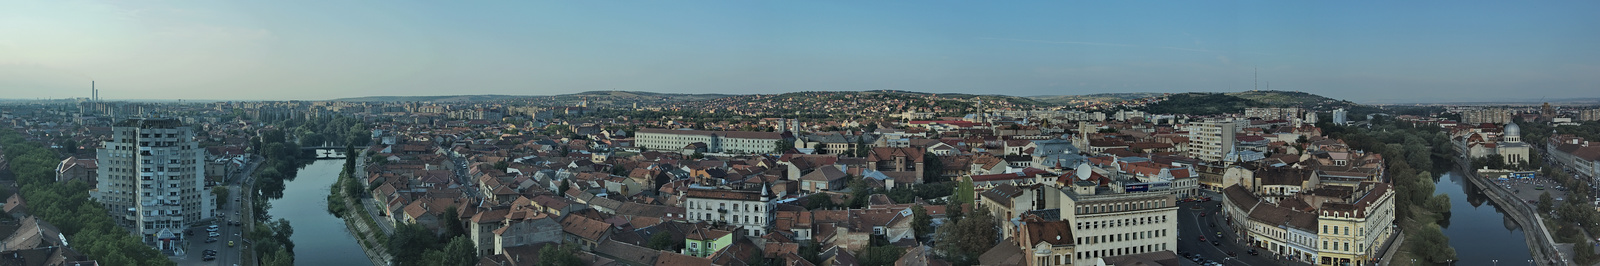 Nagyvarad - Panorama